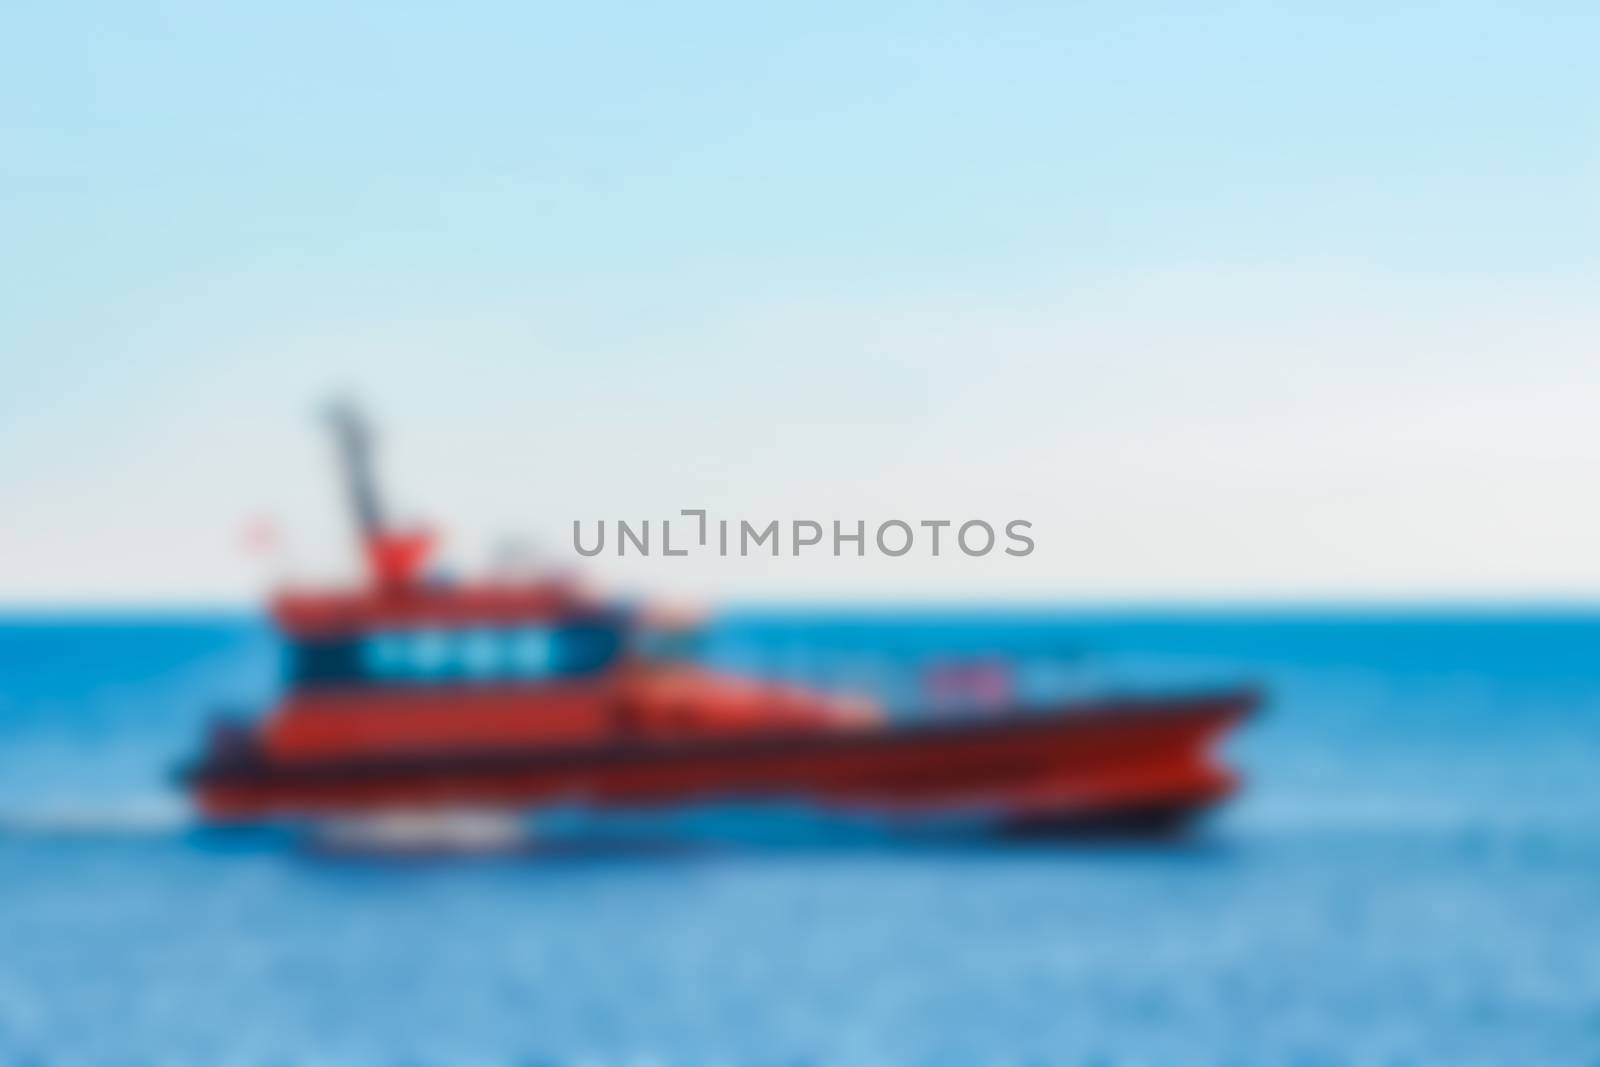 Pilot boat - blurred image by sengnsp